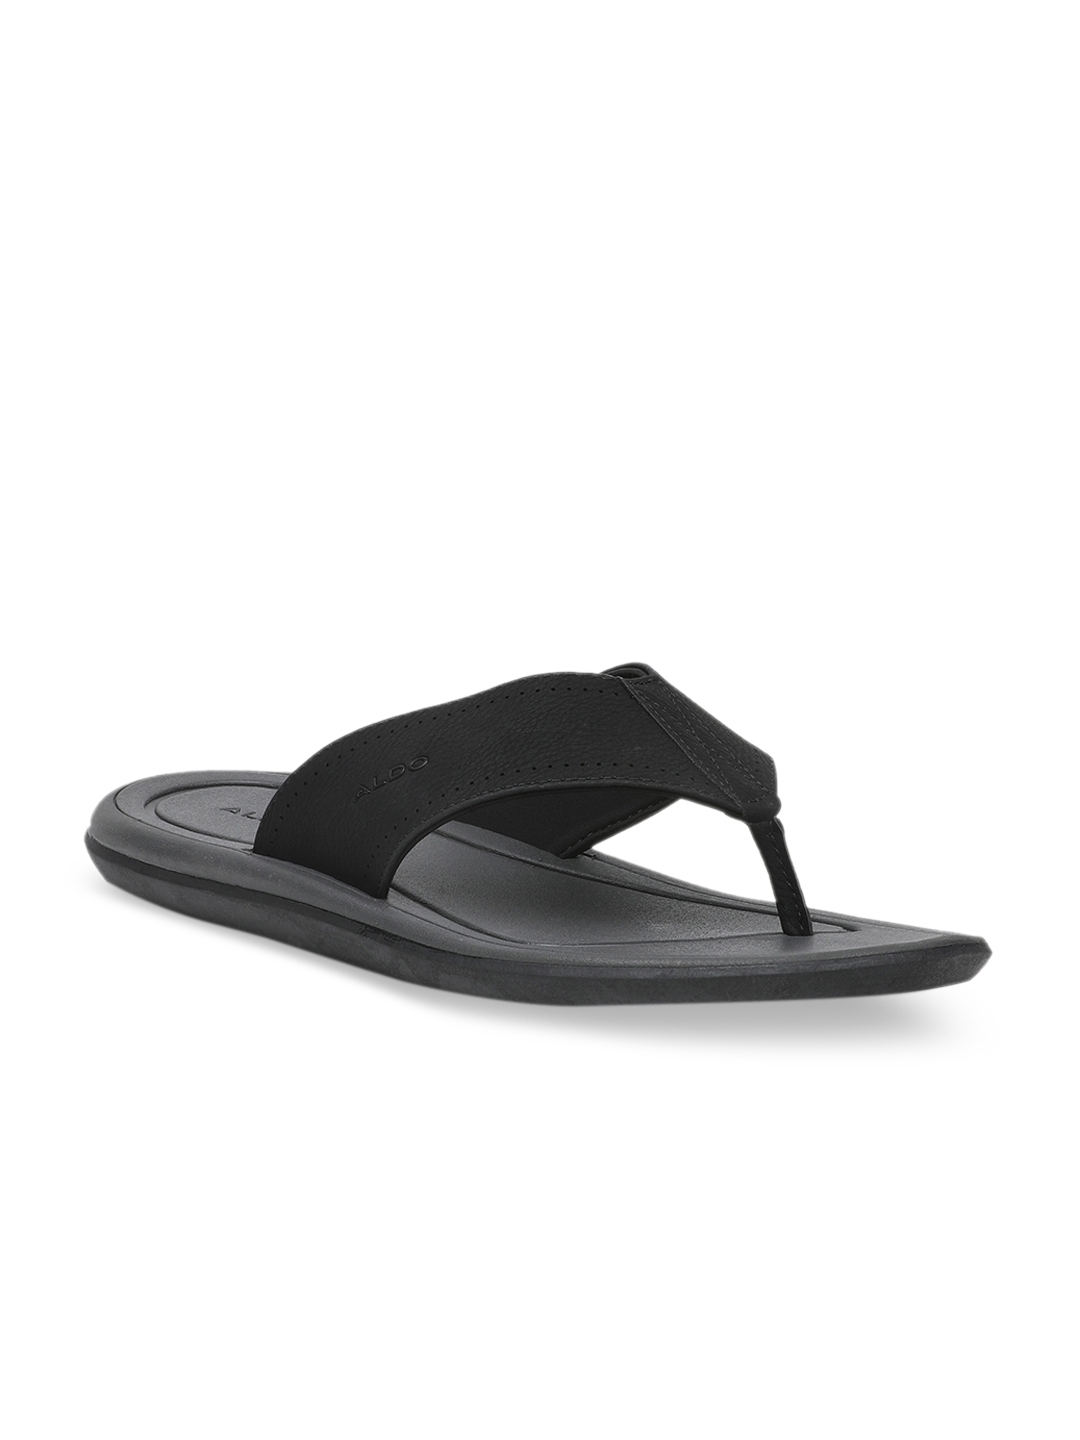 Buy ALDO Men Sandals - Sandals for Men Myntra